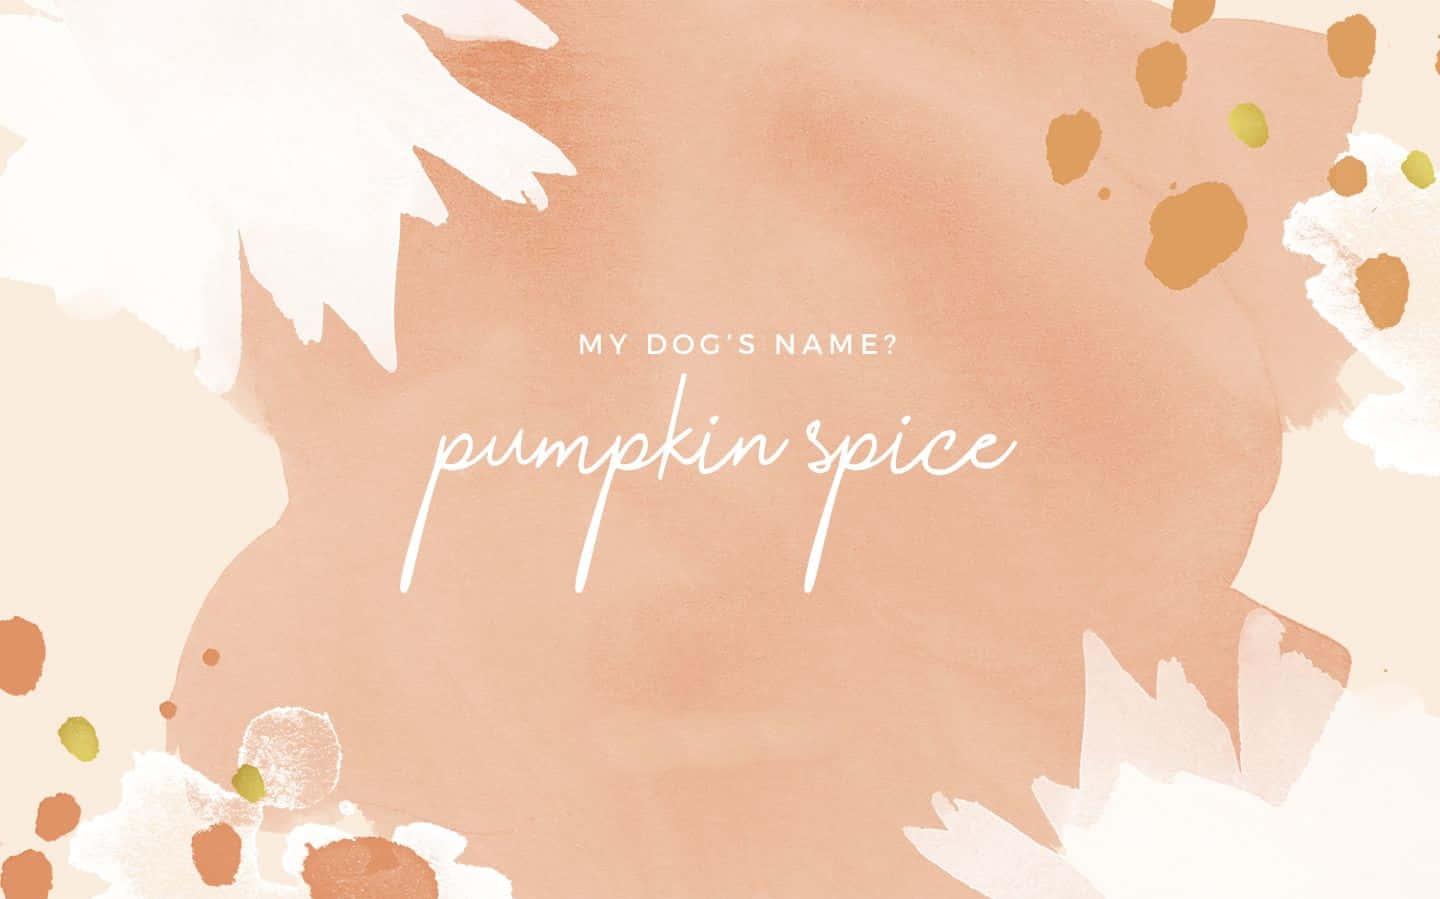 Cute Autumn Desktop Wallpaper